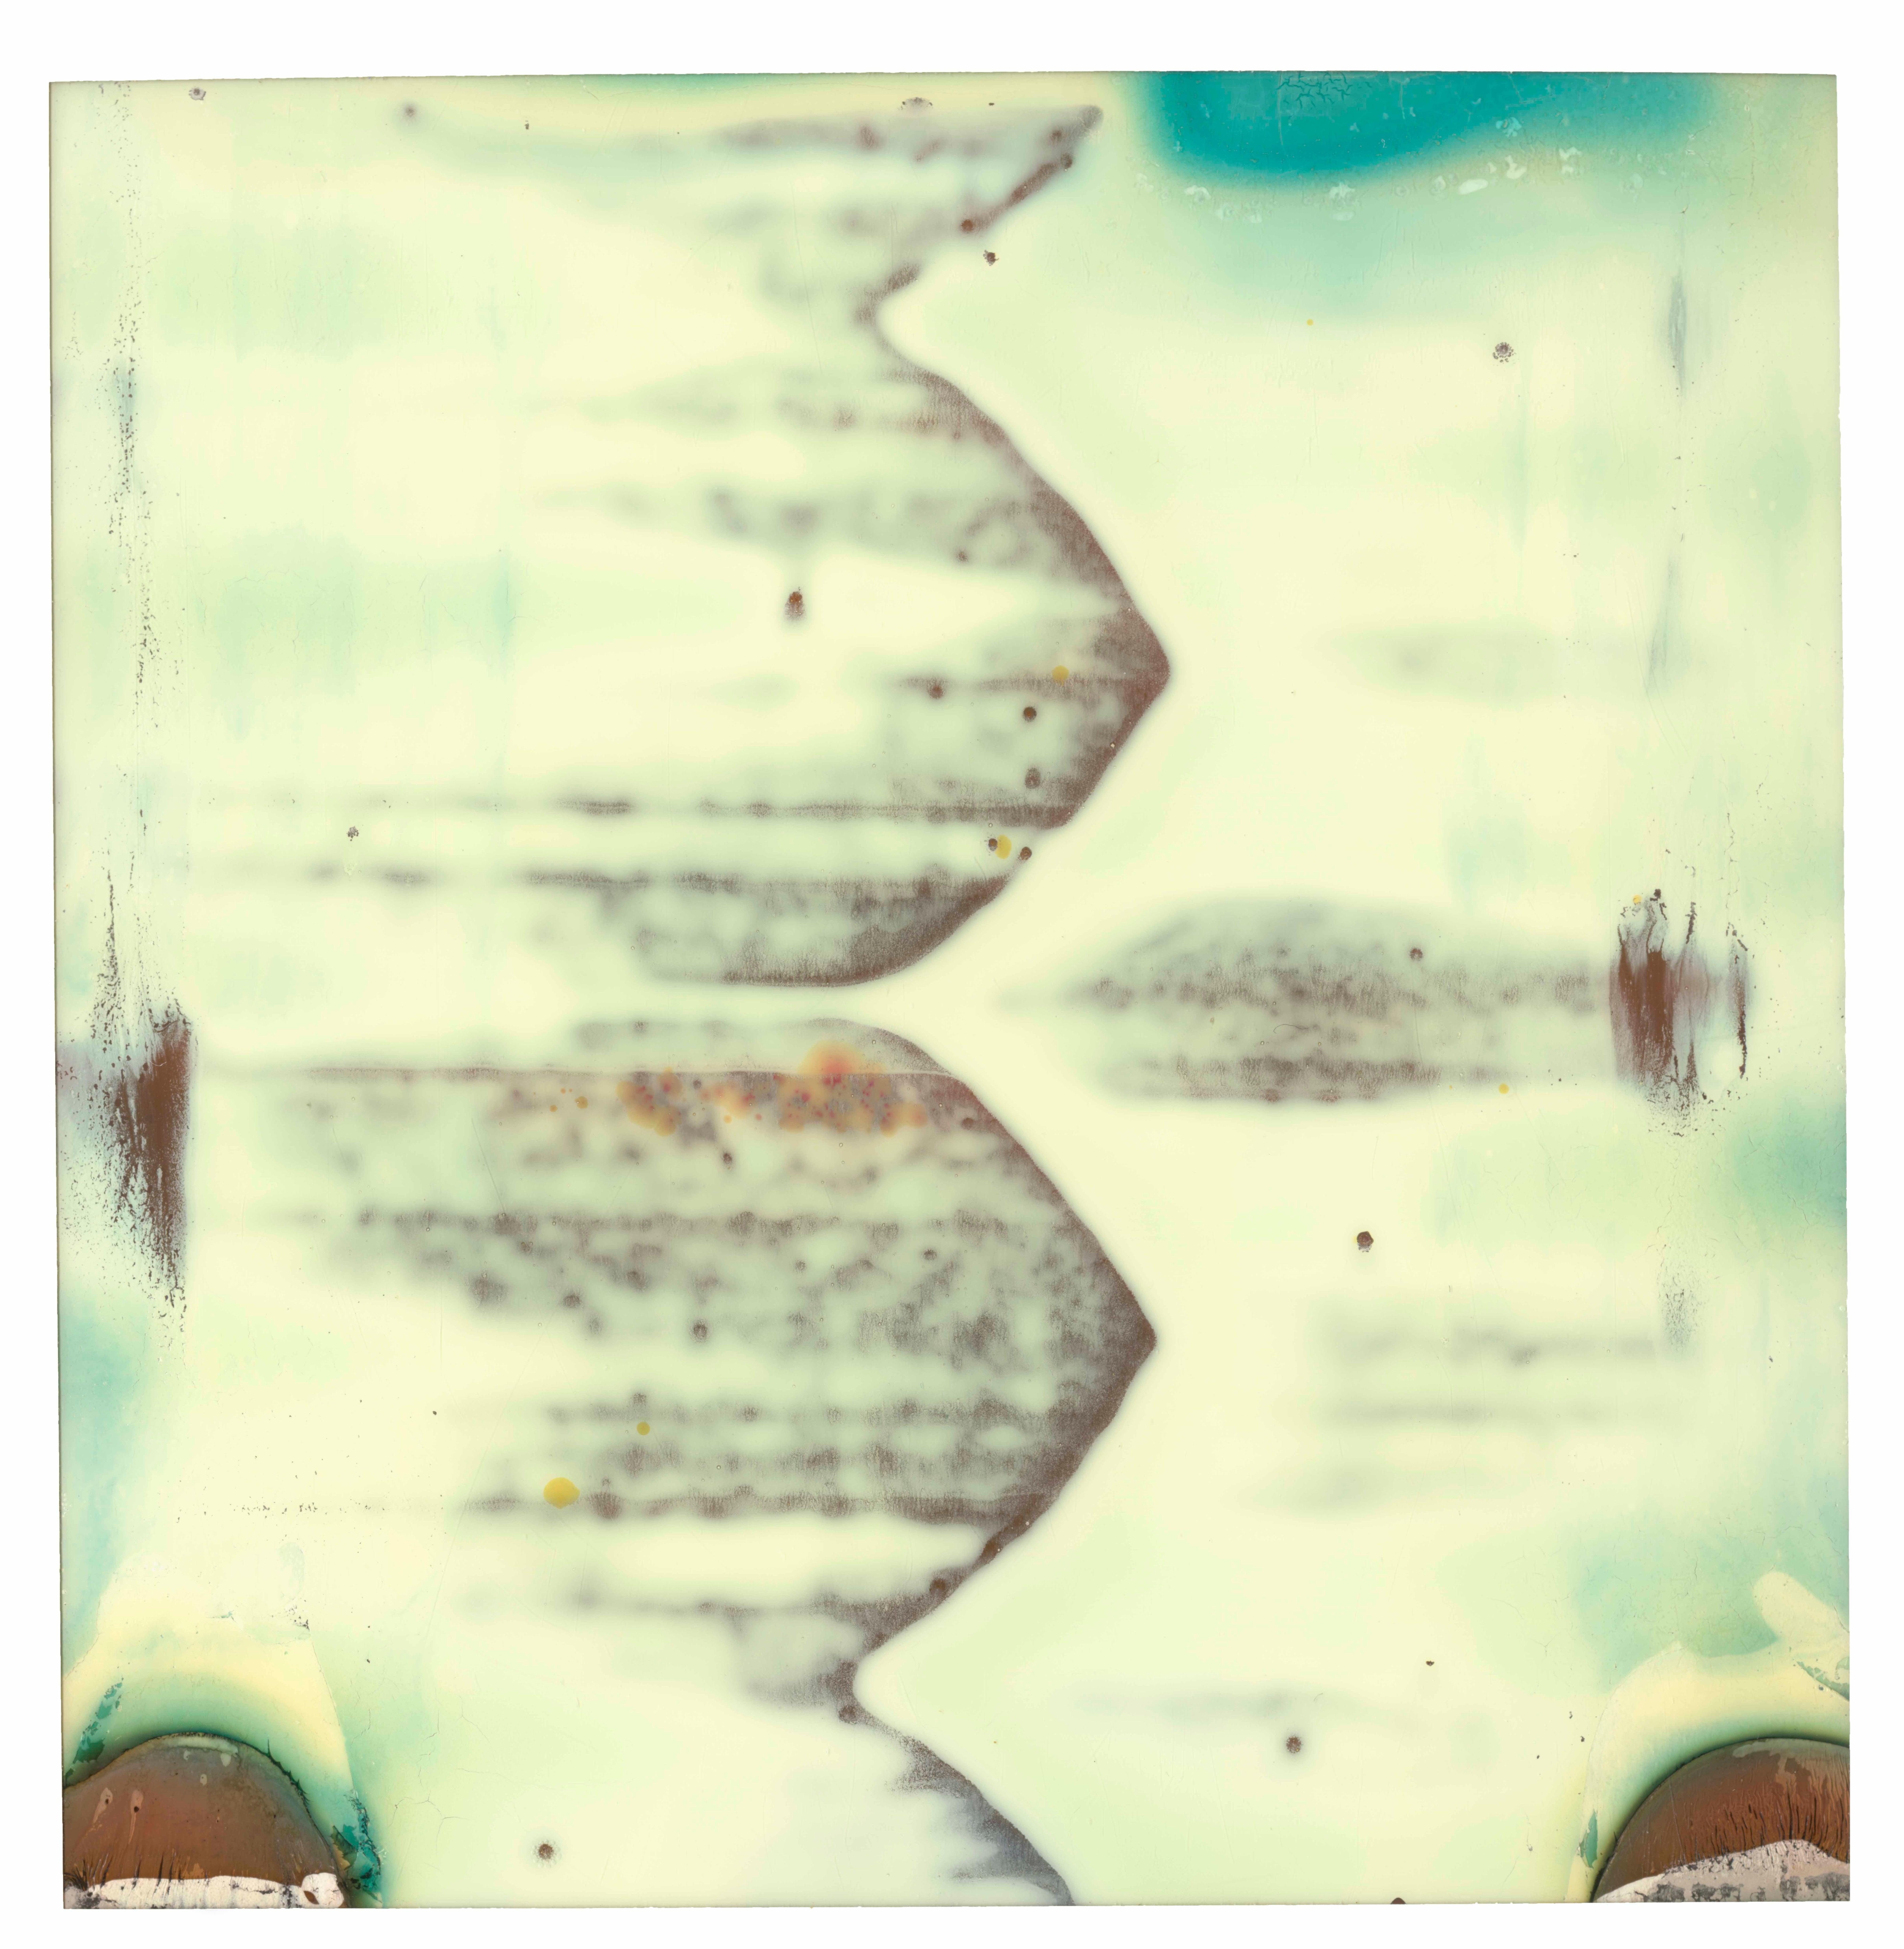 Abstract Photograph Stefanie Schneider - Strangers (Deconstructivisme) - 21e siècle, Polaroid, couleur